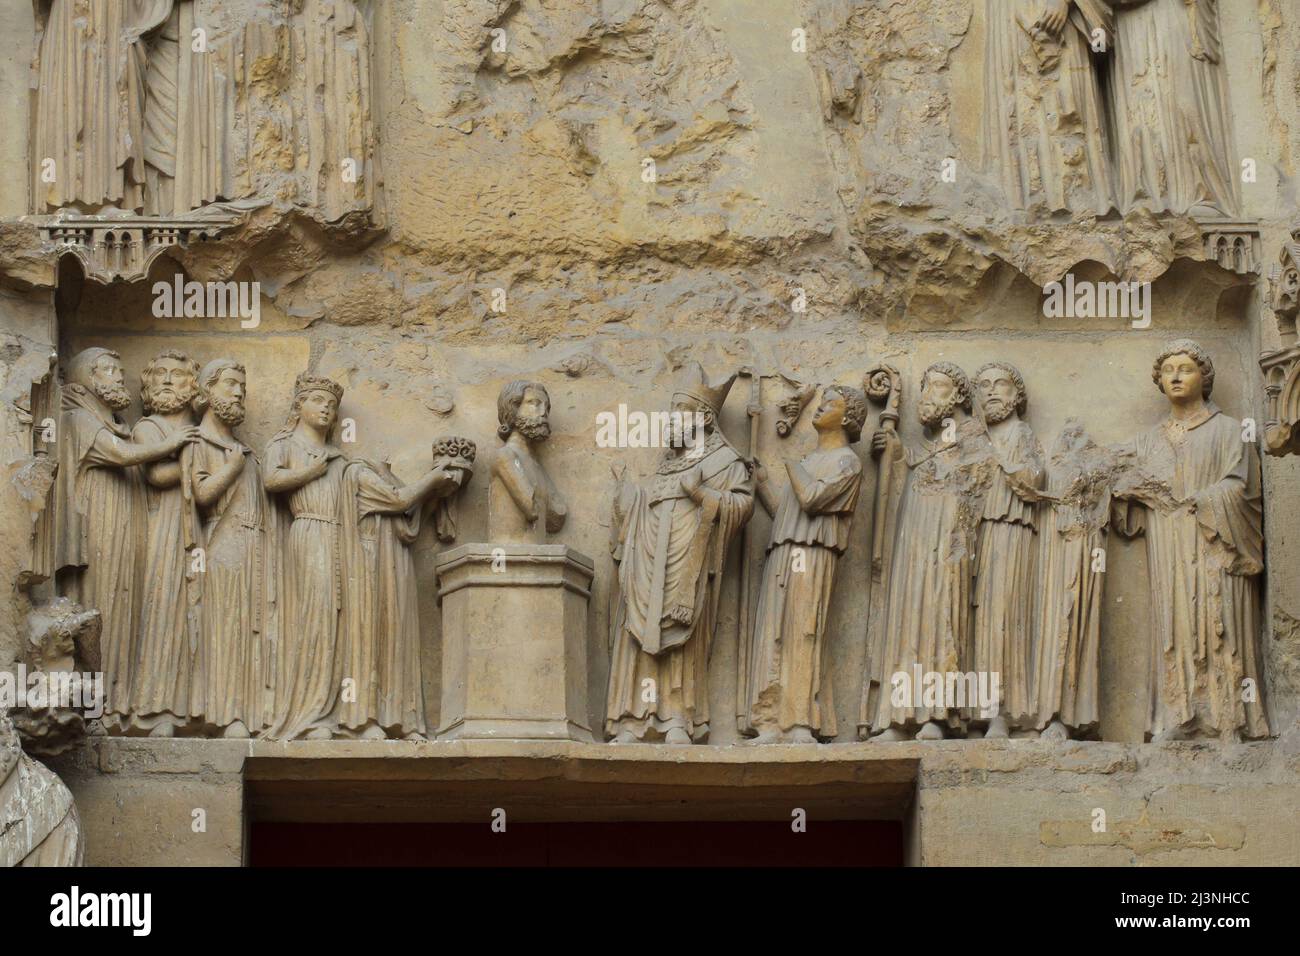 Bautismo del Rey Clovis I por San Remigio de Reims representado en el tímpano del portal central de la fachada norte de la Catedral de Reims (Cathédrale Notre-Dame de Reims) en Reims, Francia. Foto de stock